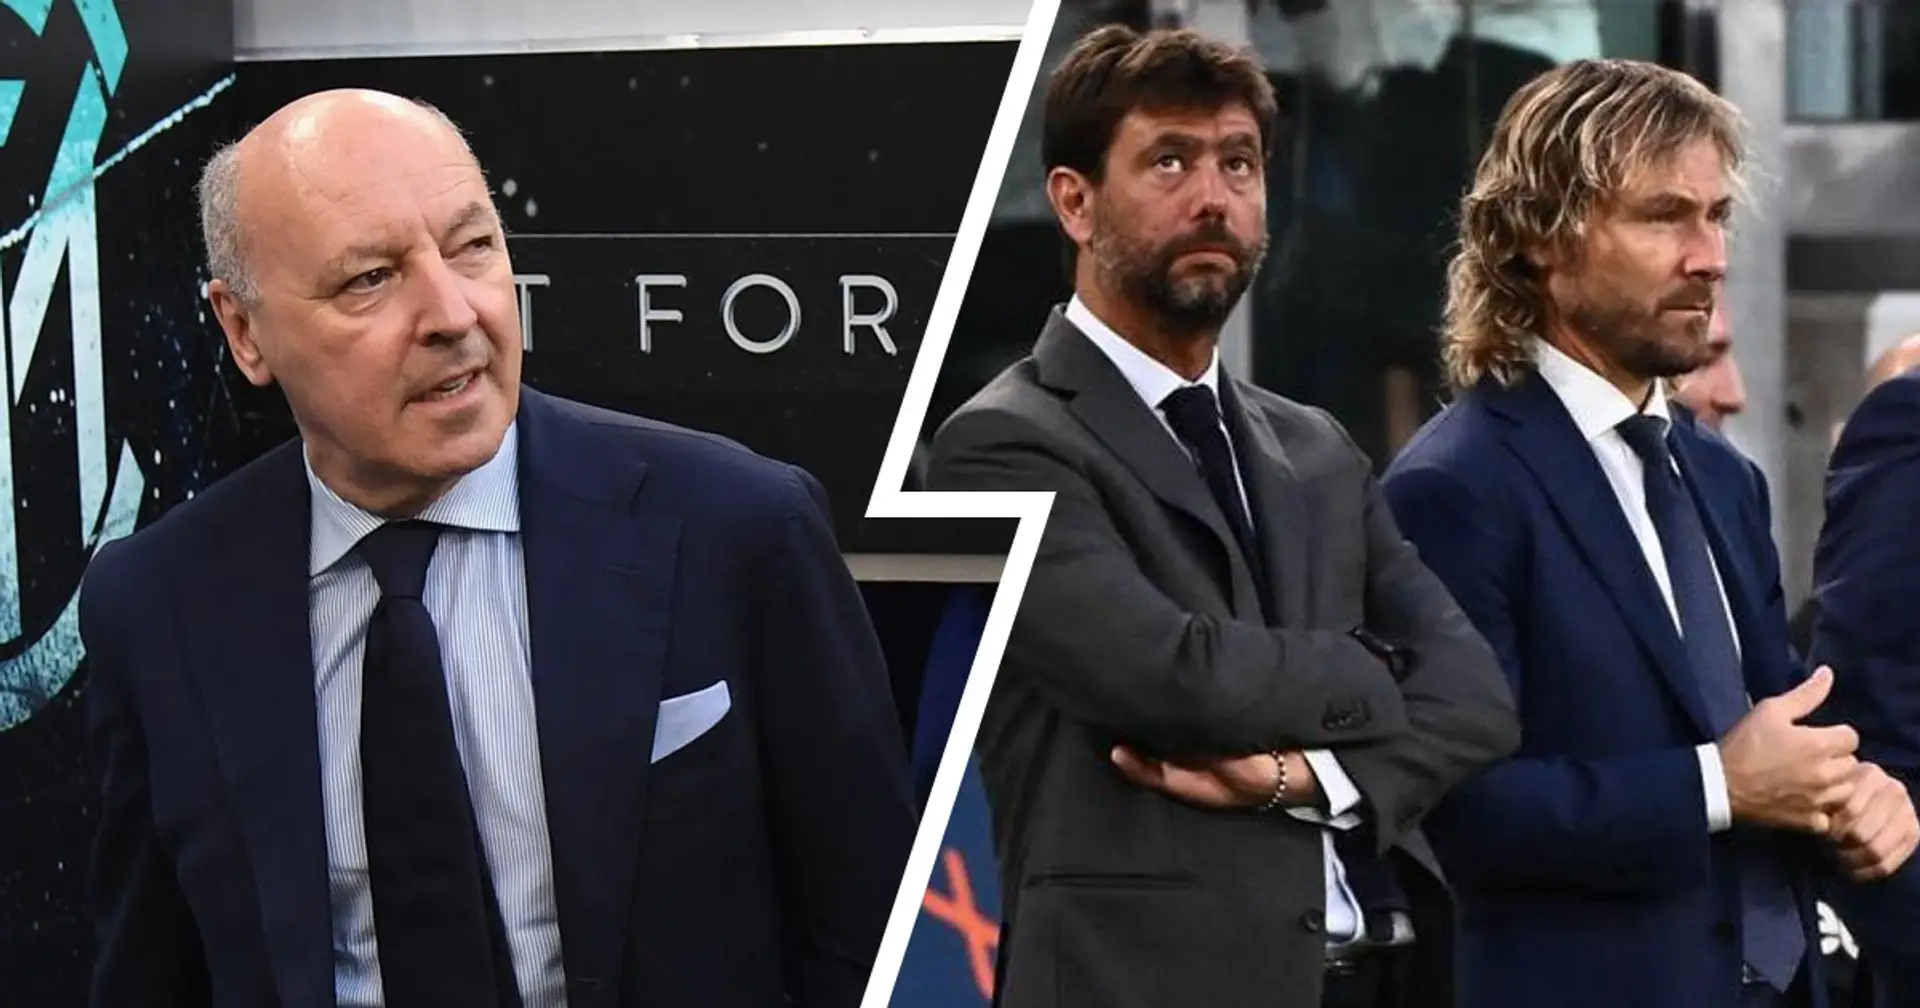 La Juventus e i suoi dirigenti apicali condannati tranne uno: l'inspiegabile caso di Beppe Marotta